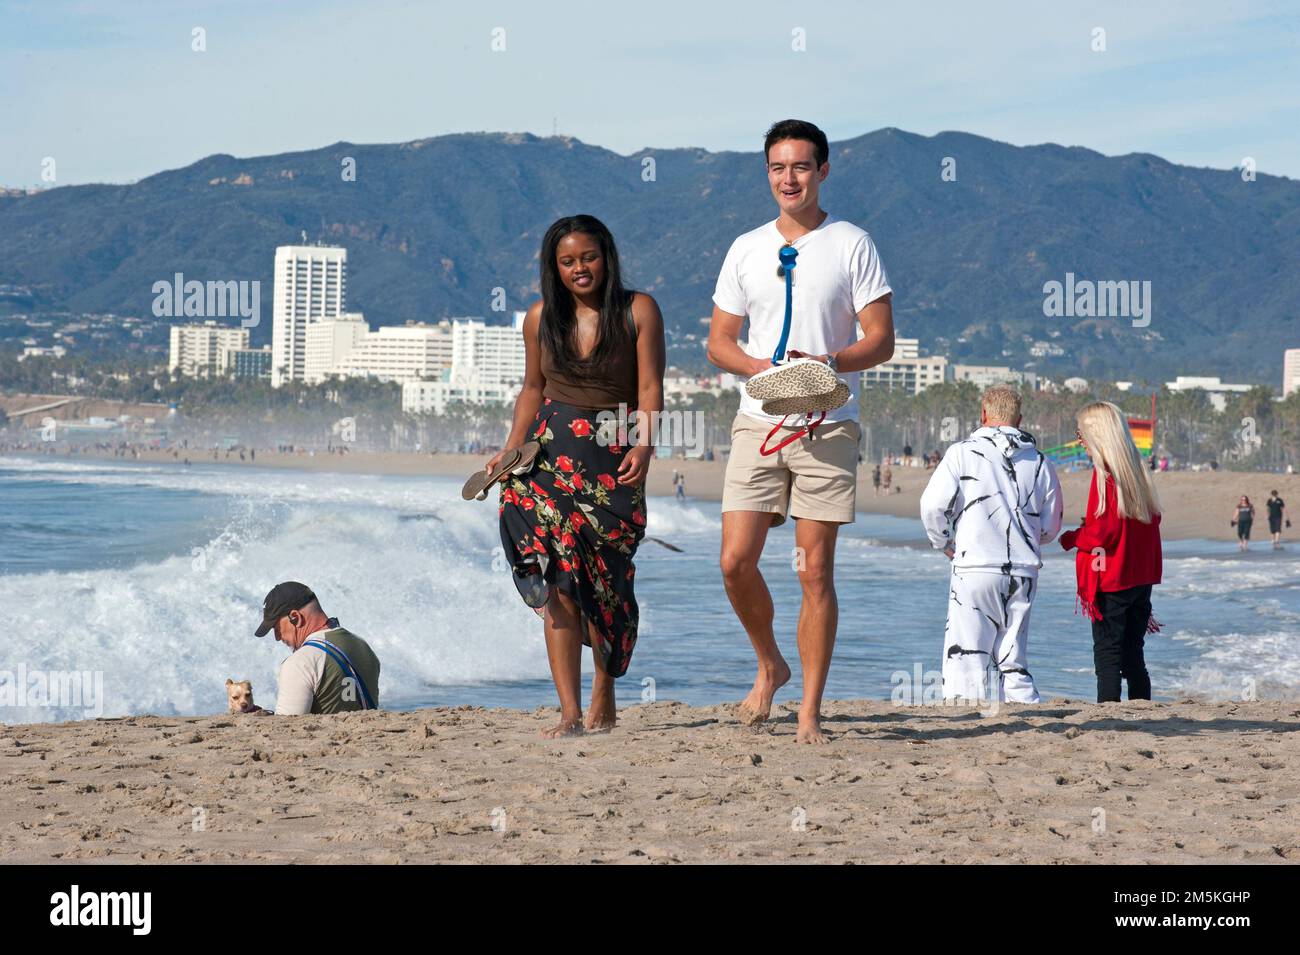 Le persone che si godono una passeggiata a Venice Beach con lo skyline di Santa Monica sullo sfondo. Foto Stock